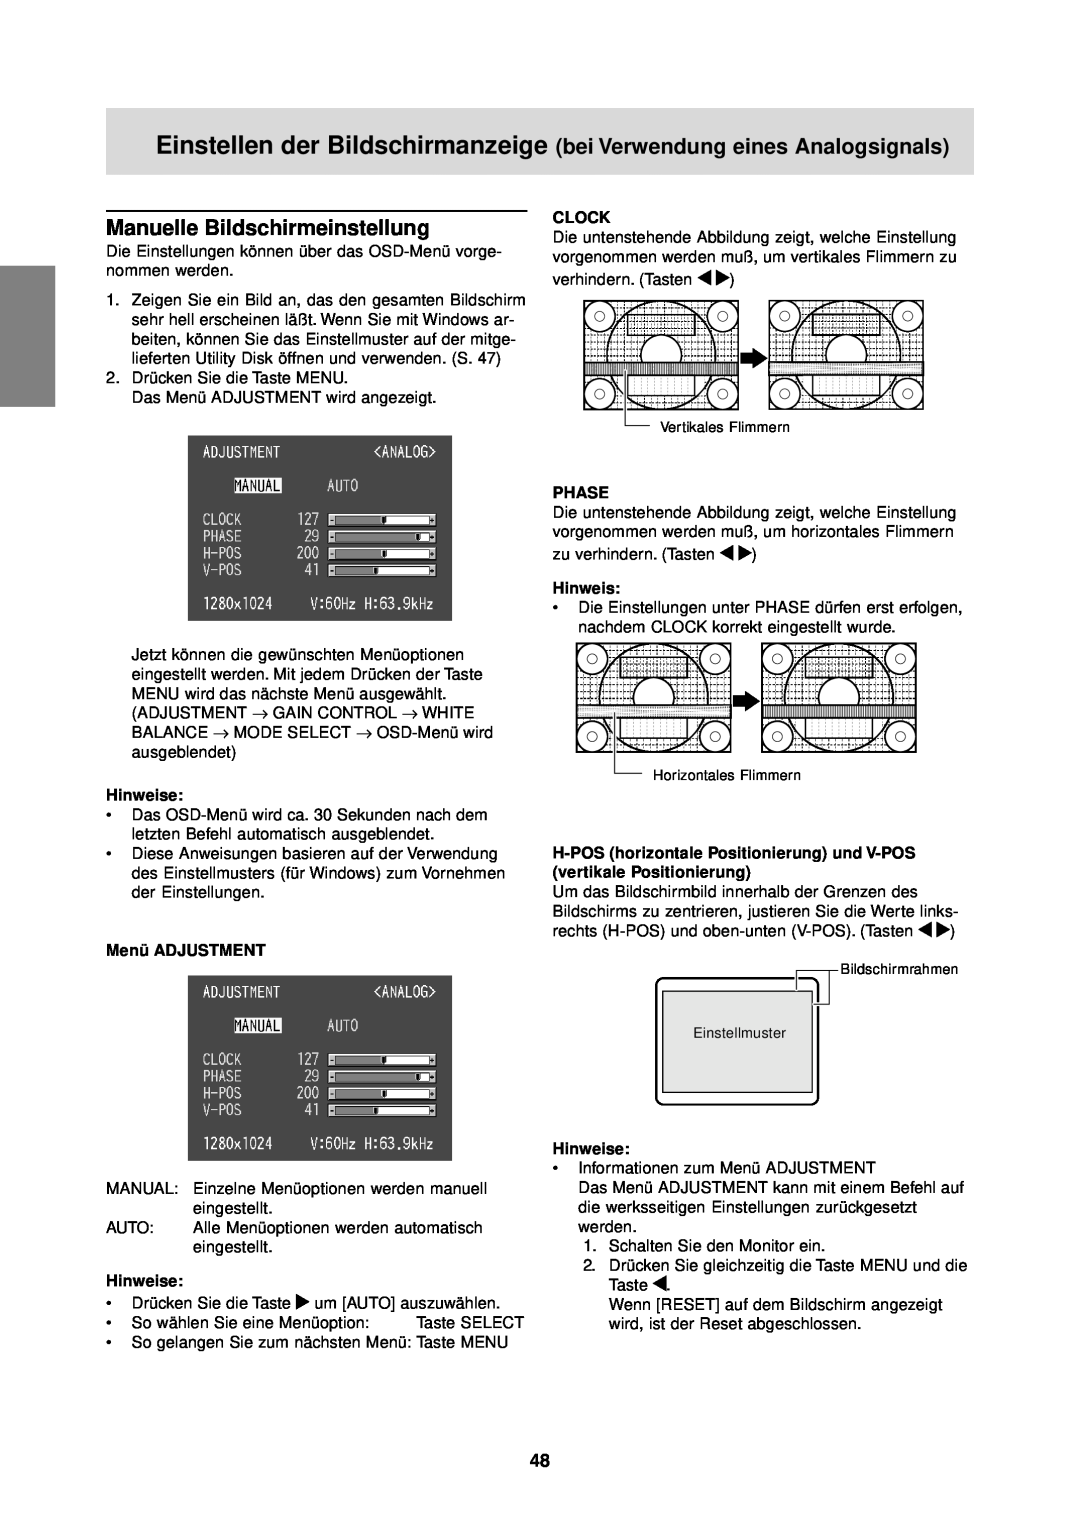 Sharp LL-T1610W Einstellen der Bildschirmanzeige bei Verwendung eines Analogsignals, Manuelle Bildschirmeinstellung, Clock 